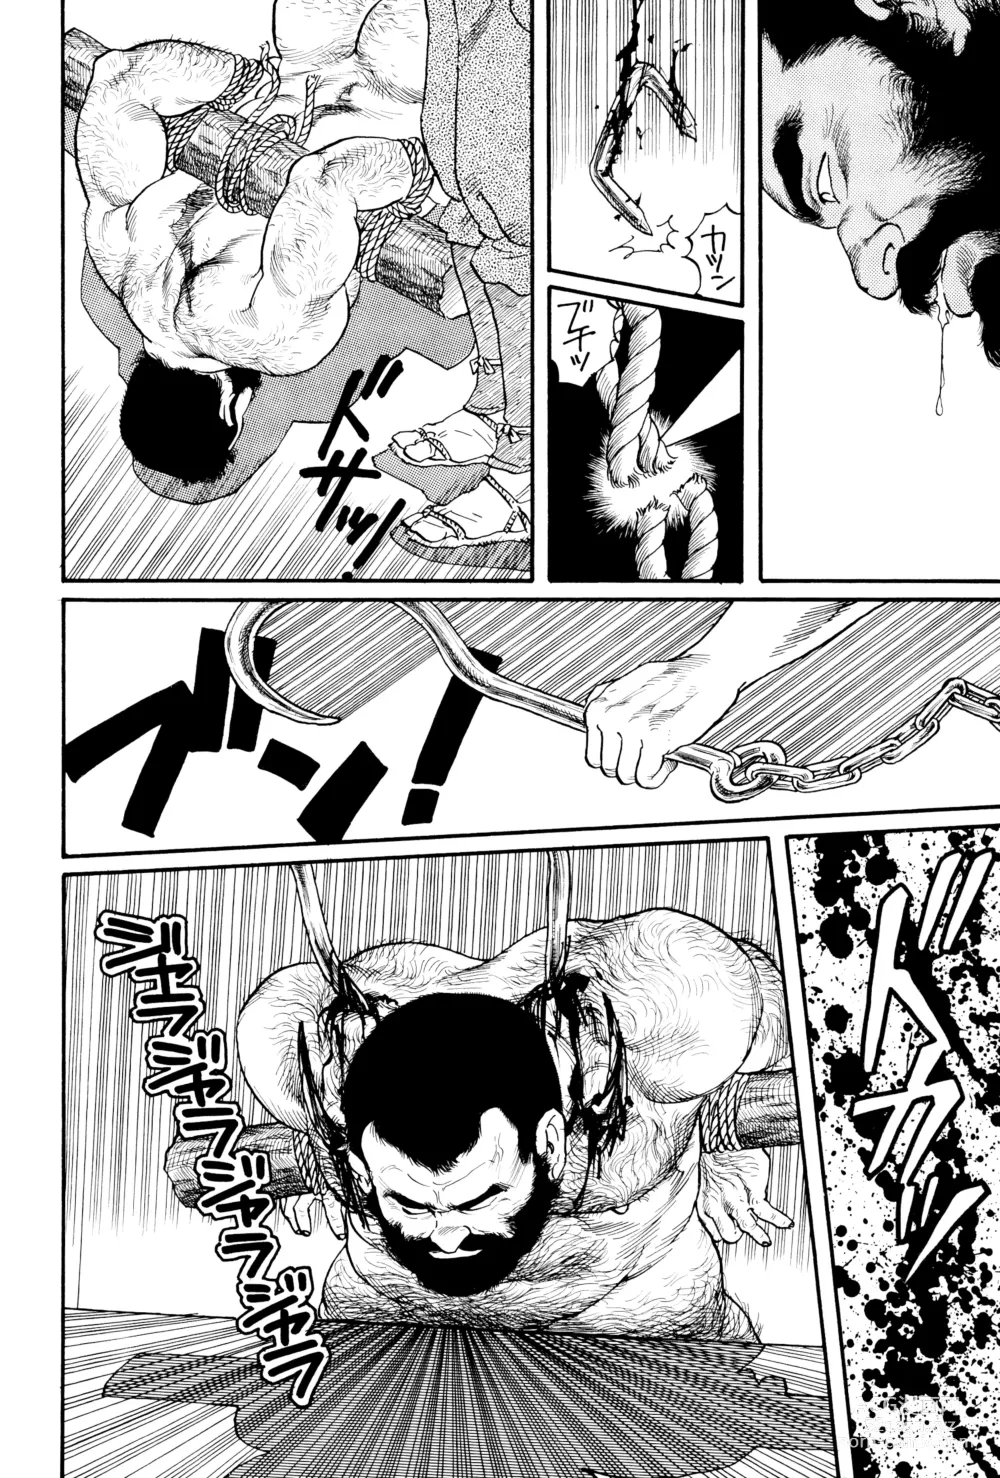 Page 26 of manga 코로모가와 이야기